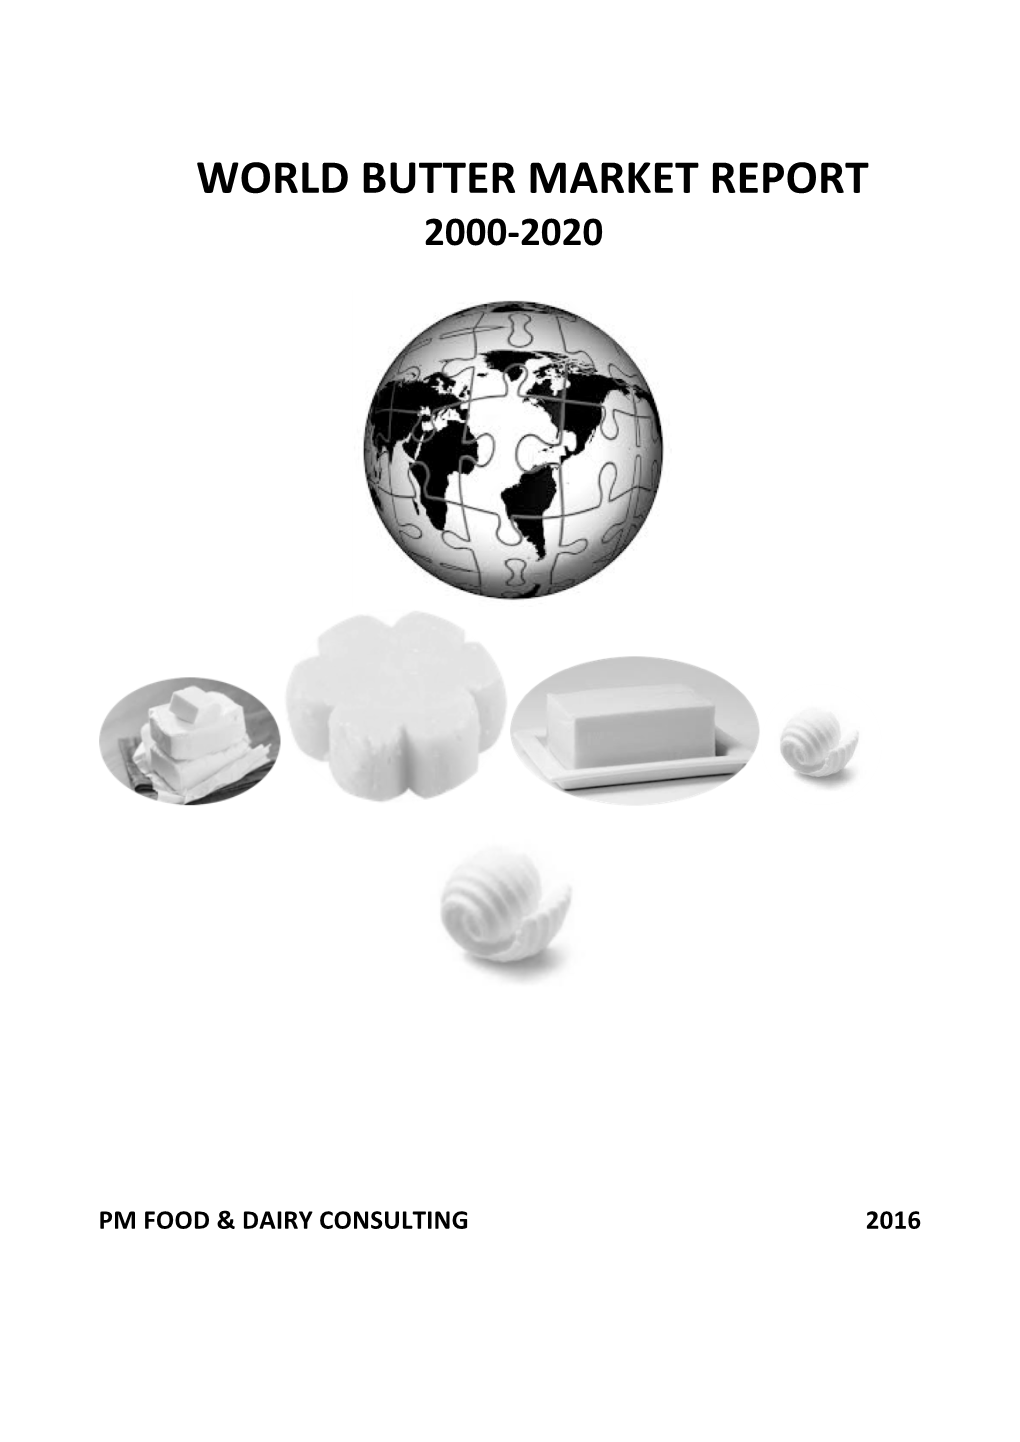 World Butter Market Report 2000-2020